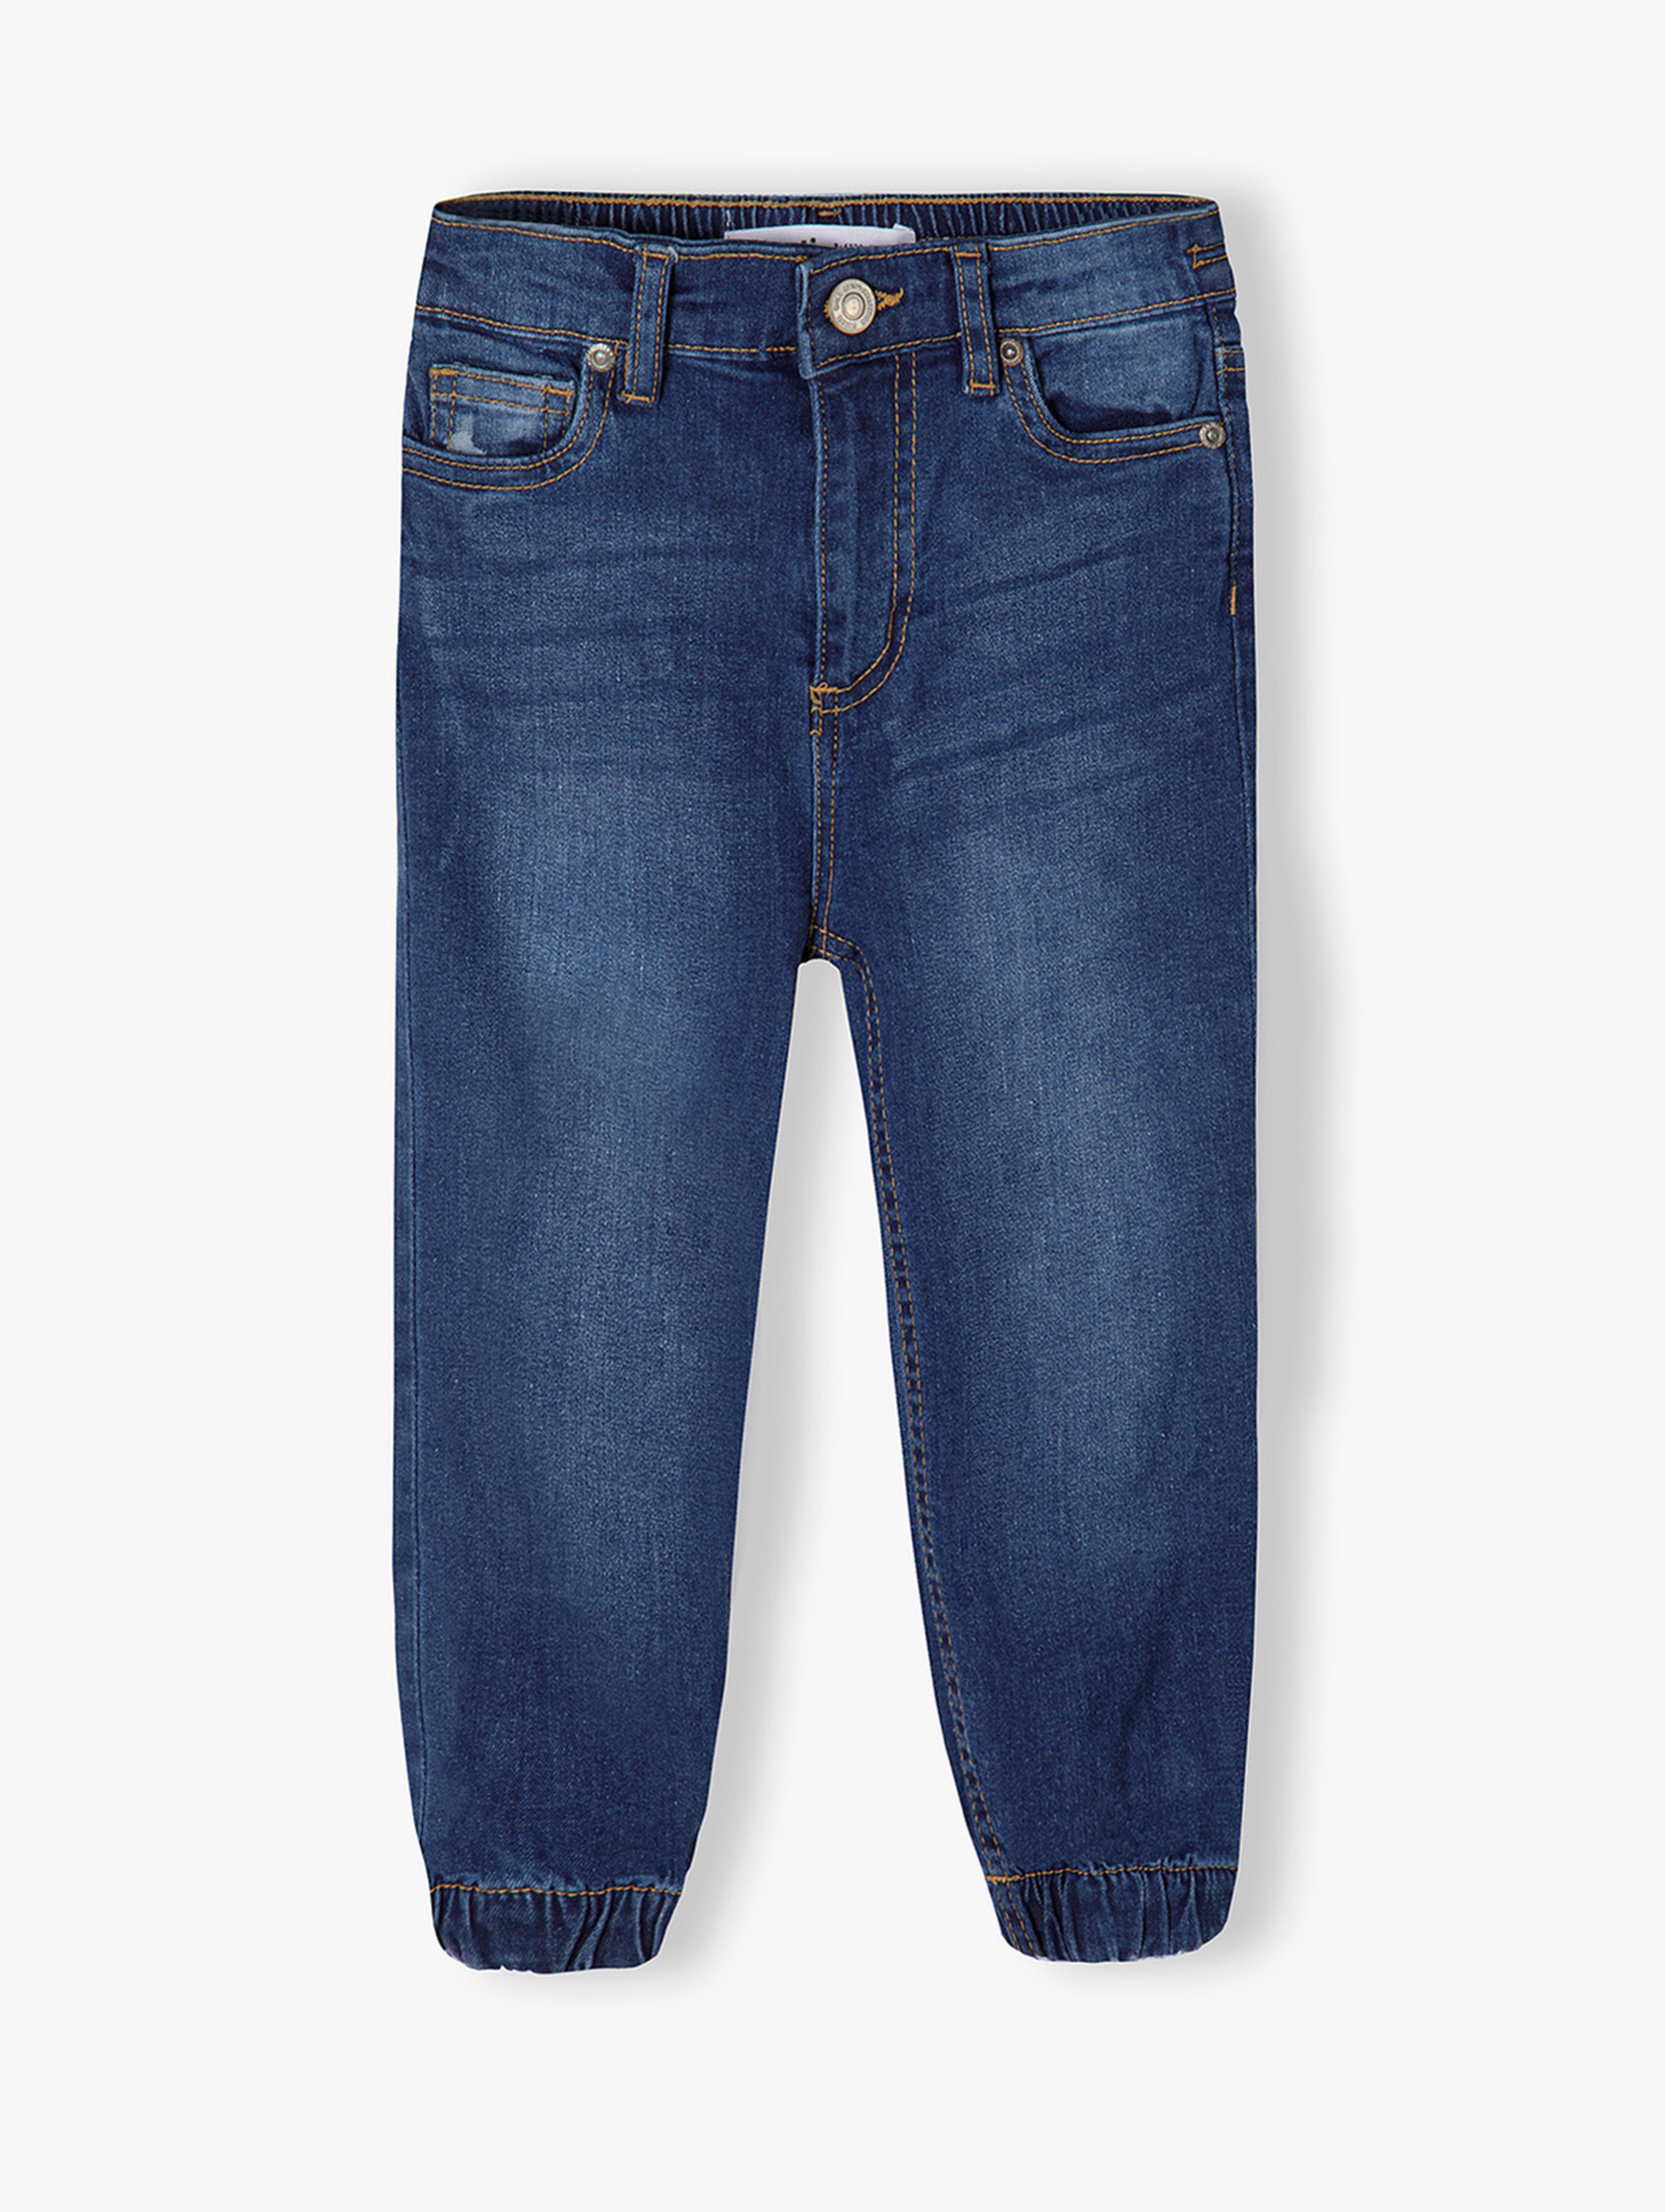 Spodnie jeansowe dla dziewczynki typu joggery - granatowe